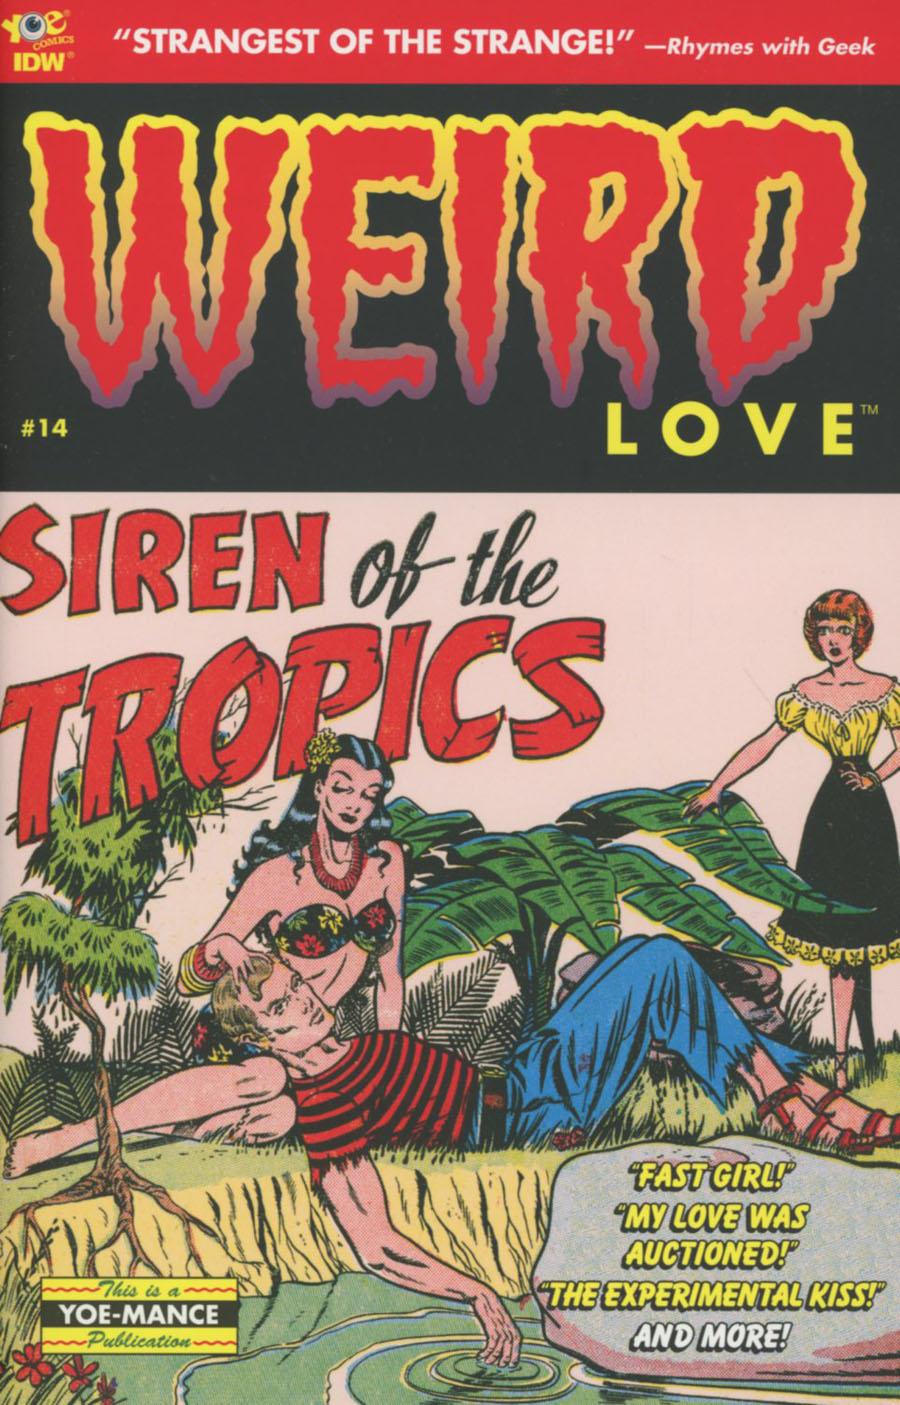 Weird Love Vol. 1 #14